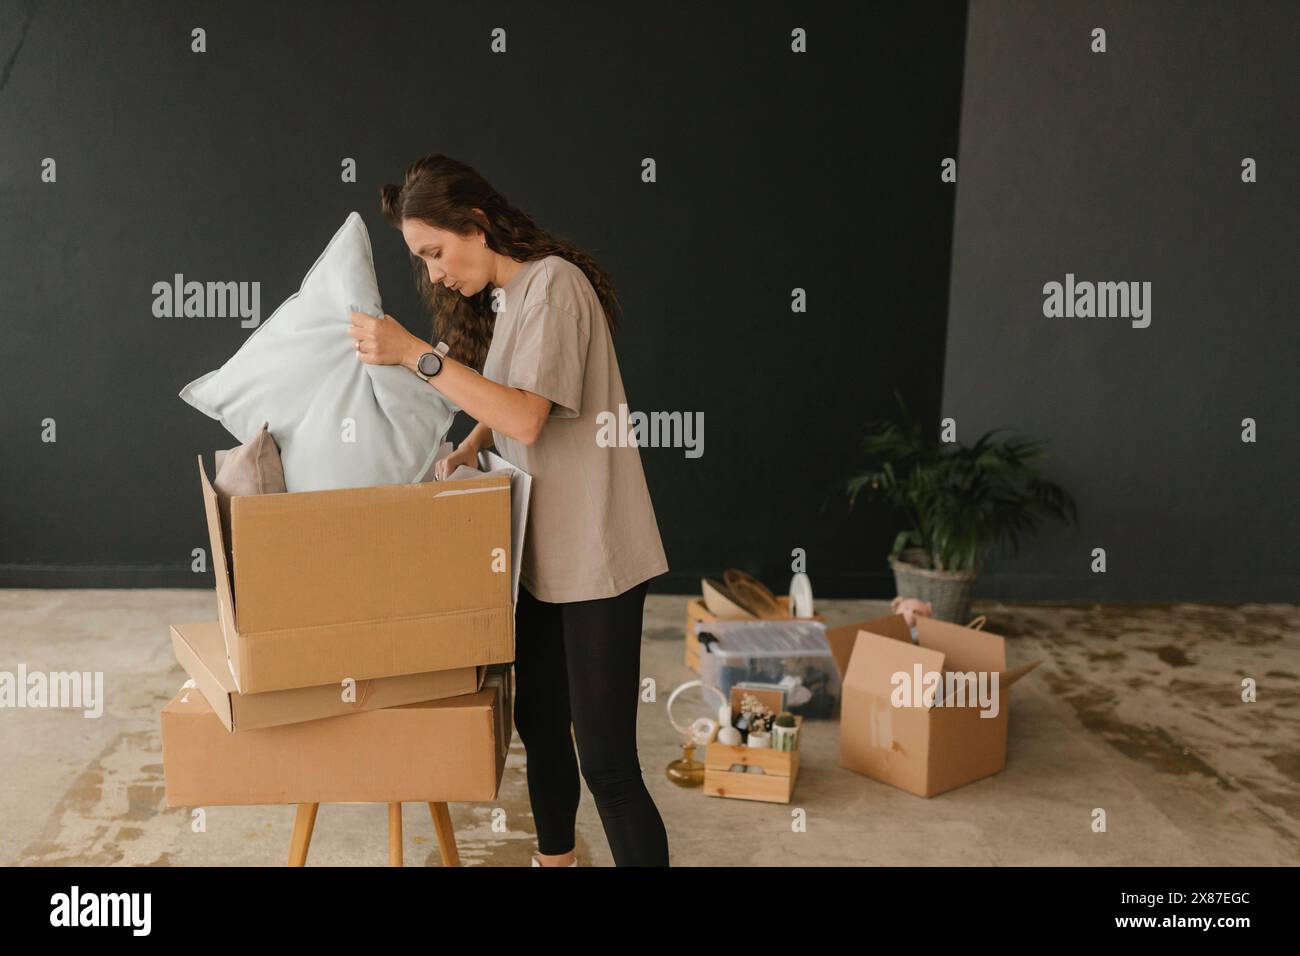 Femme enlevant les coussins de la boîte en carton dans le nouvel appartement Banque D'Images